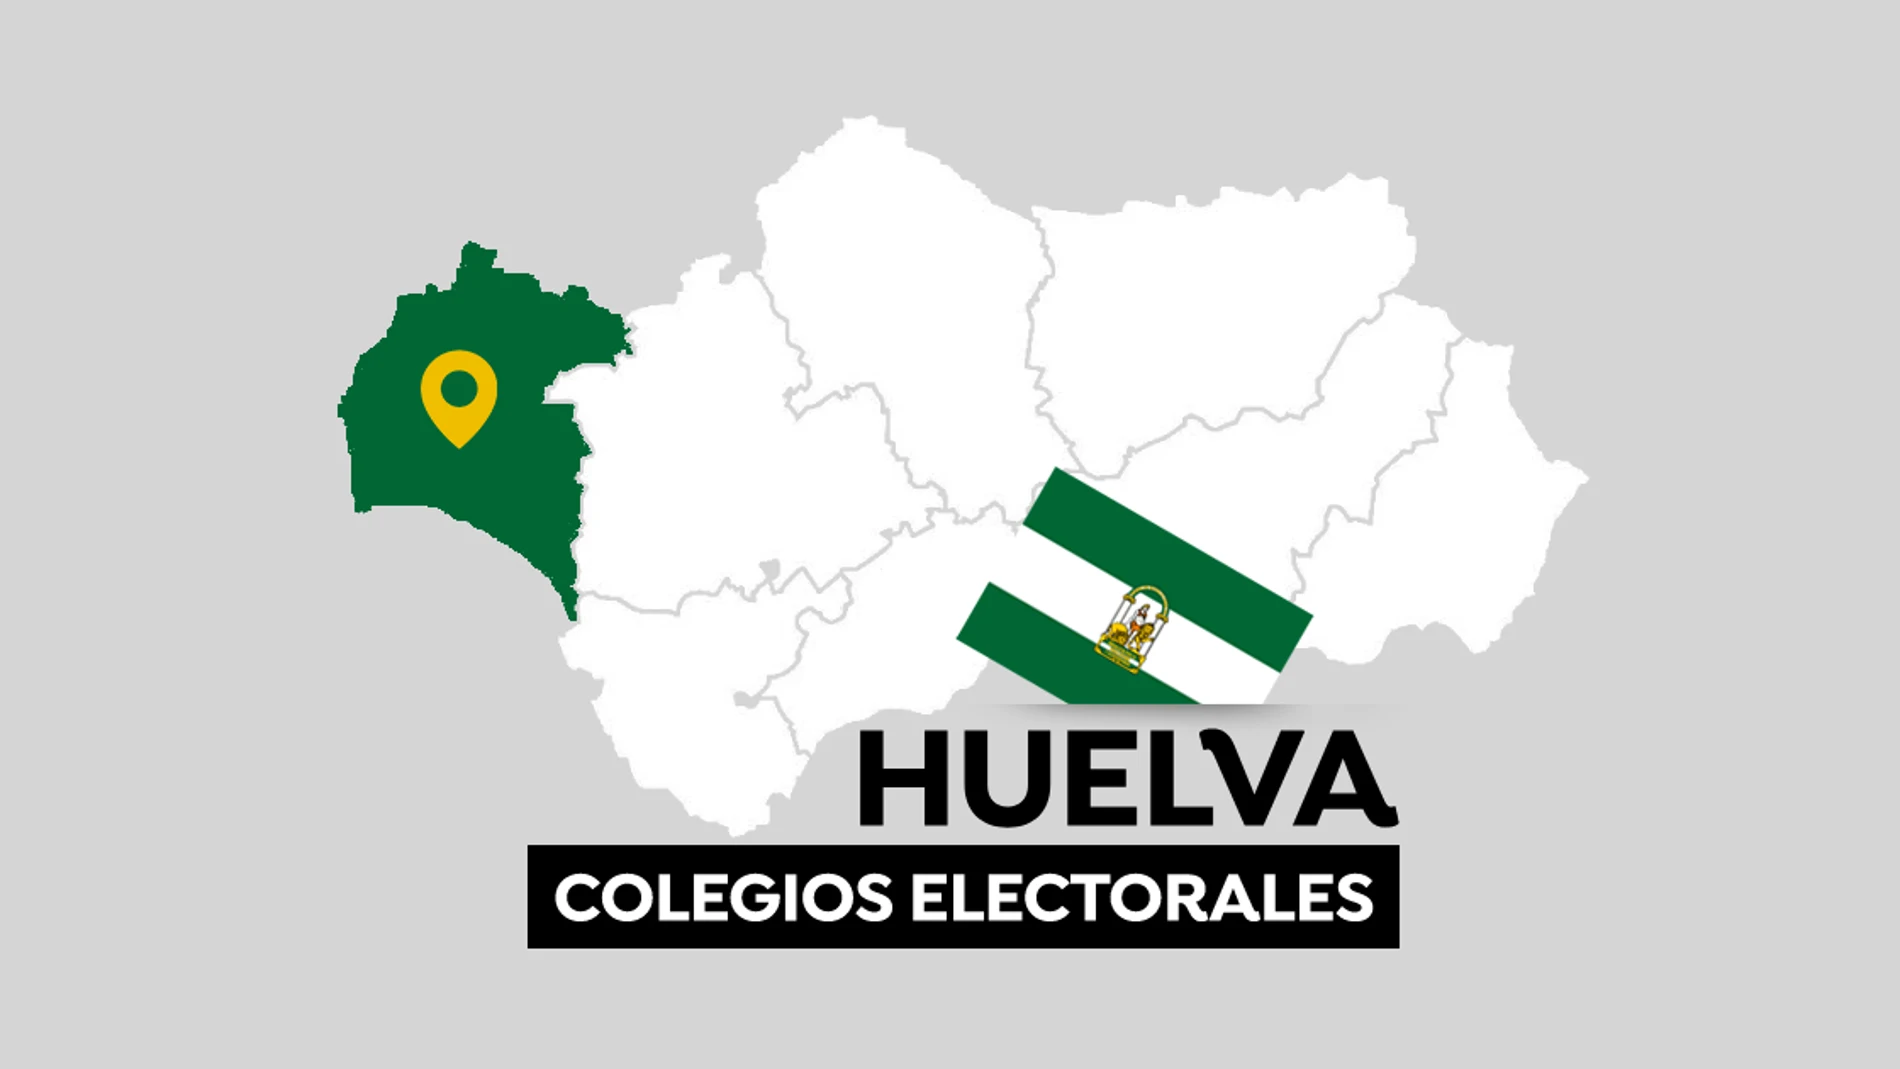 Elecciones Andalucía 2022: Colegios electorales en Huelva para votar en las elecciones andaluzas